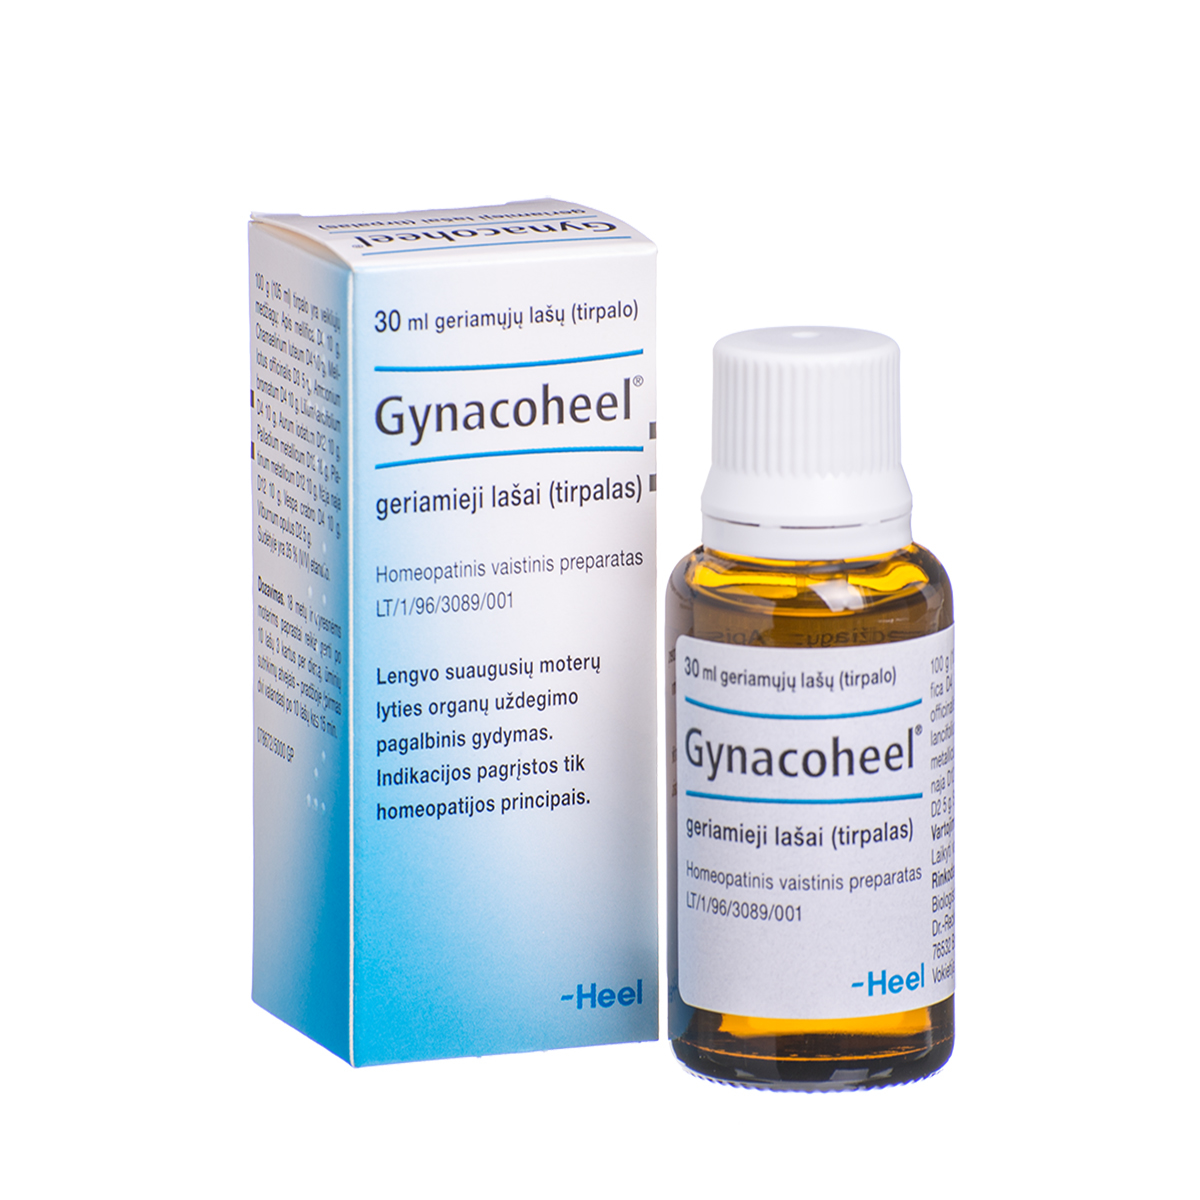 GYNACOHEEL, geriamieji lašai (tirpalas), 30 ml